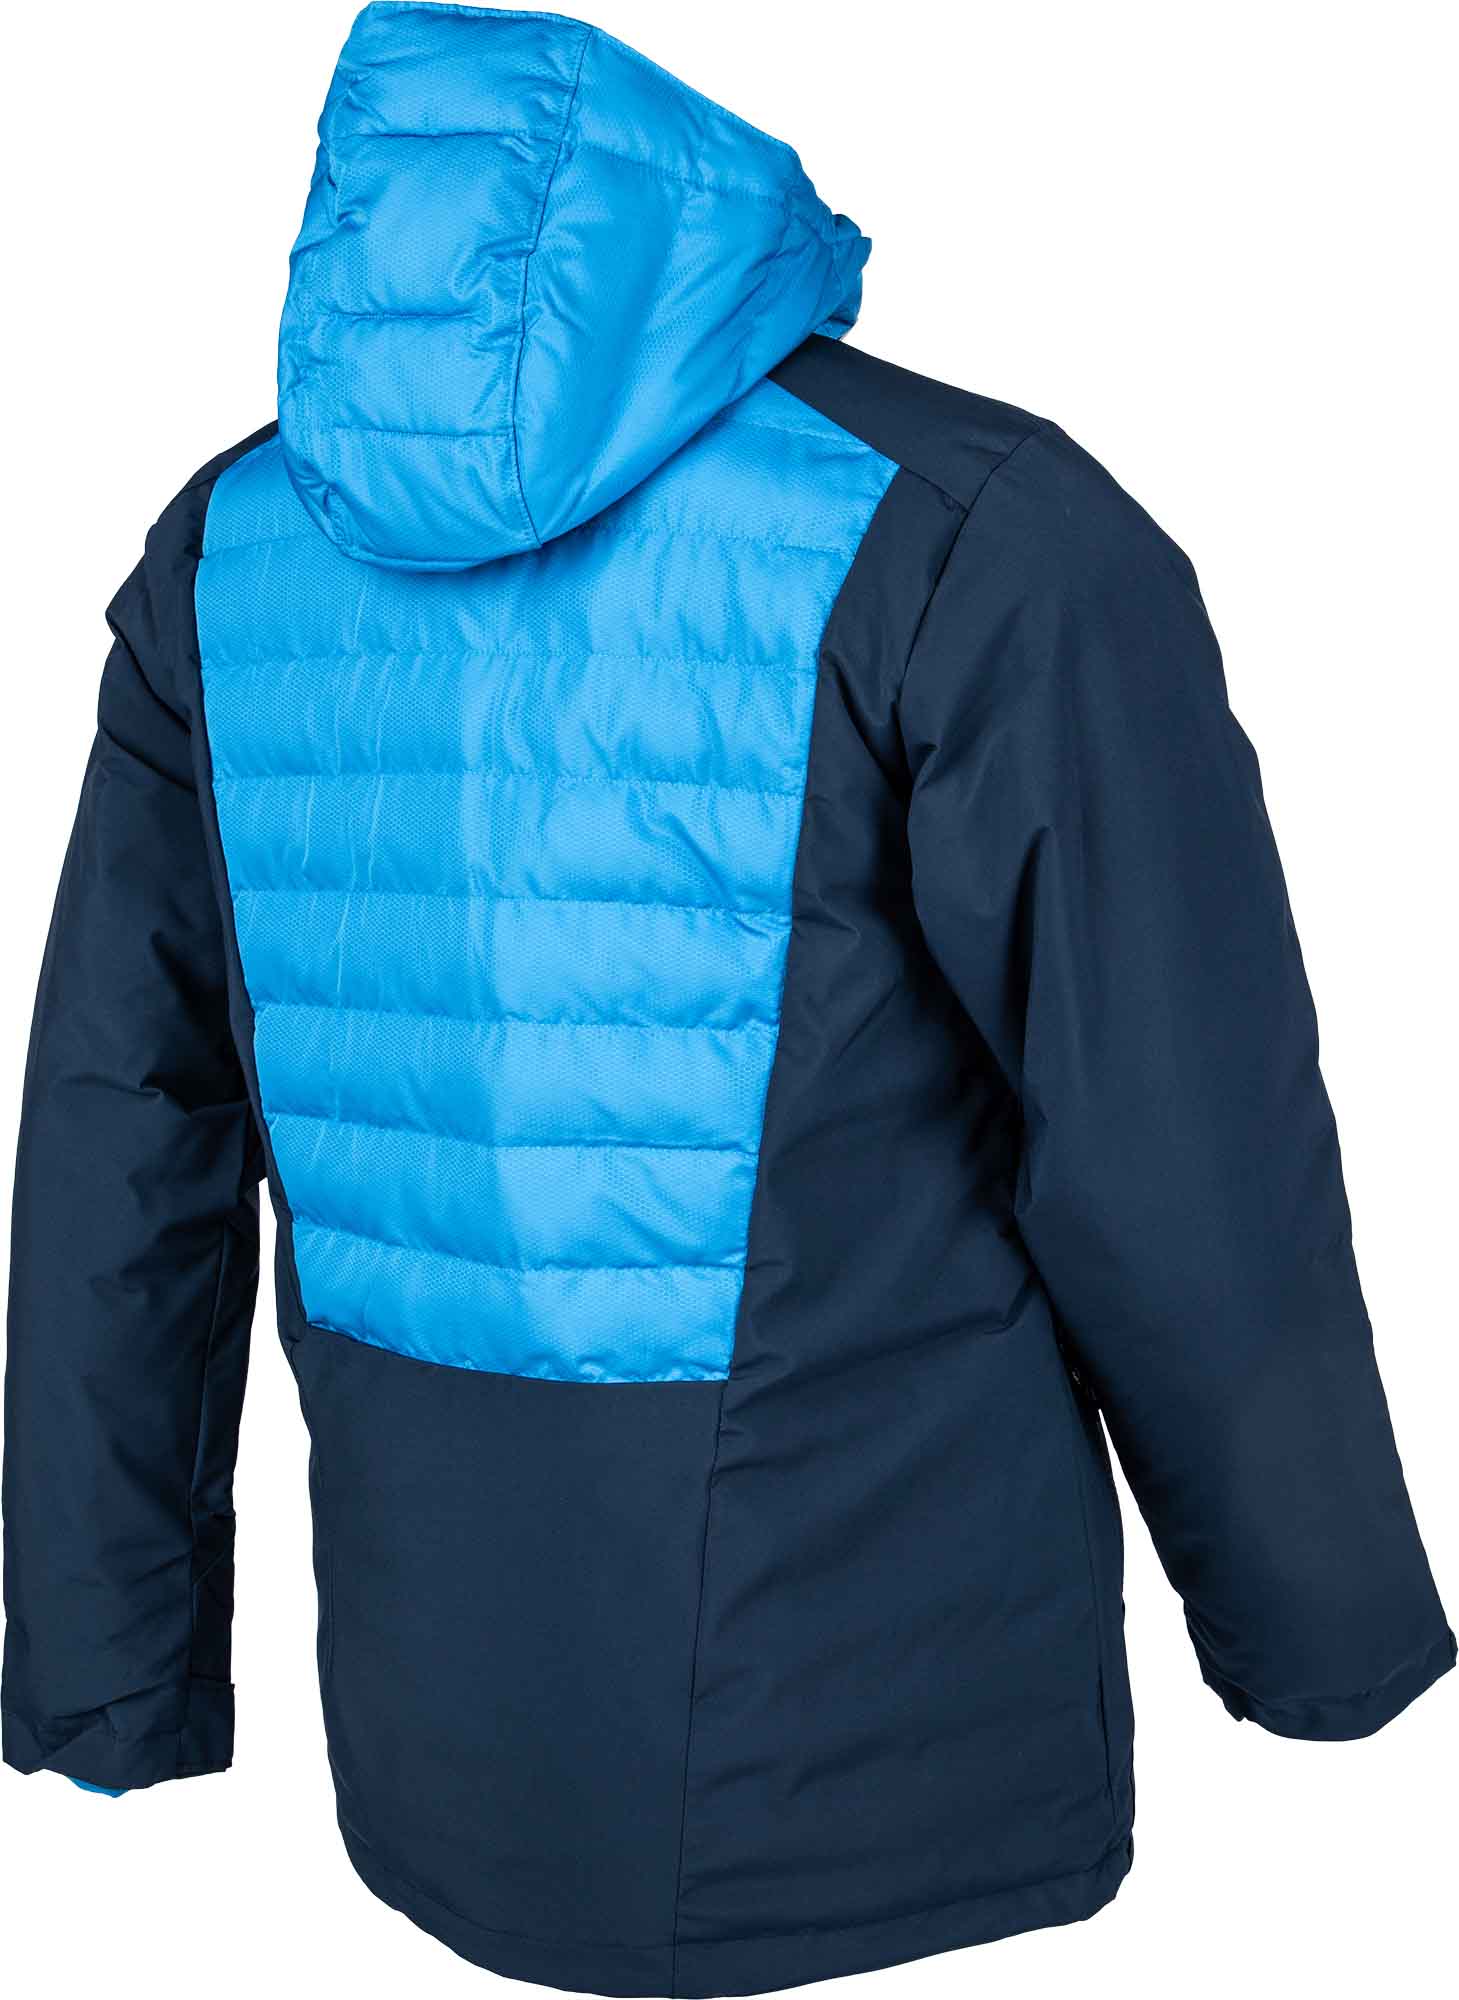 Men’s water resistant jacket